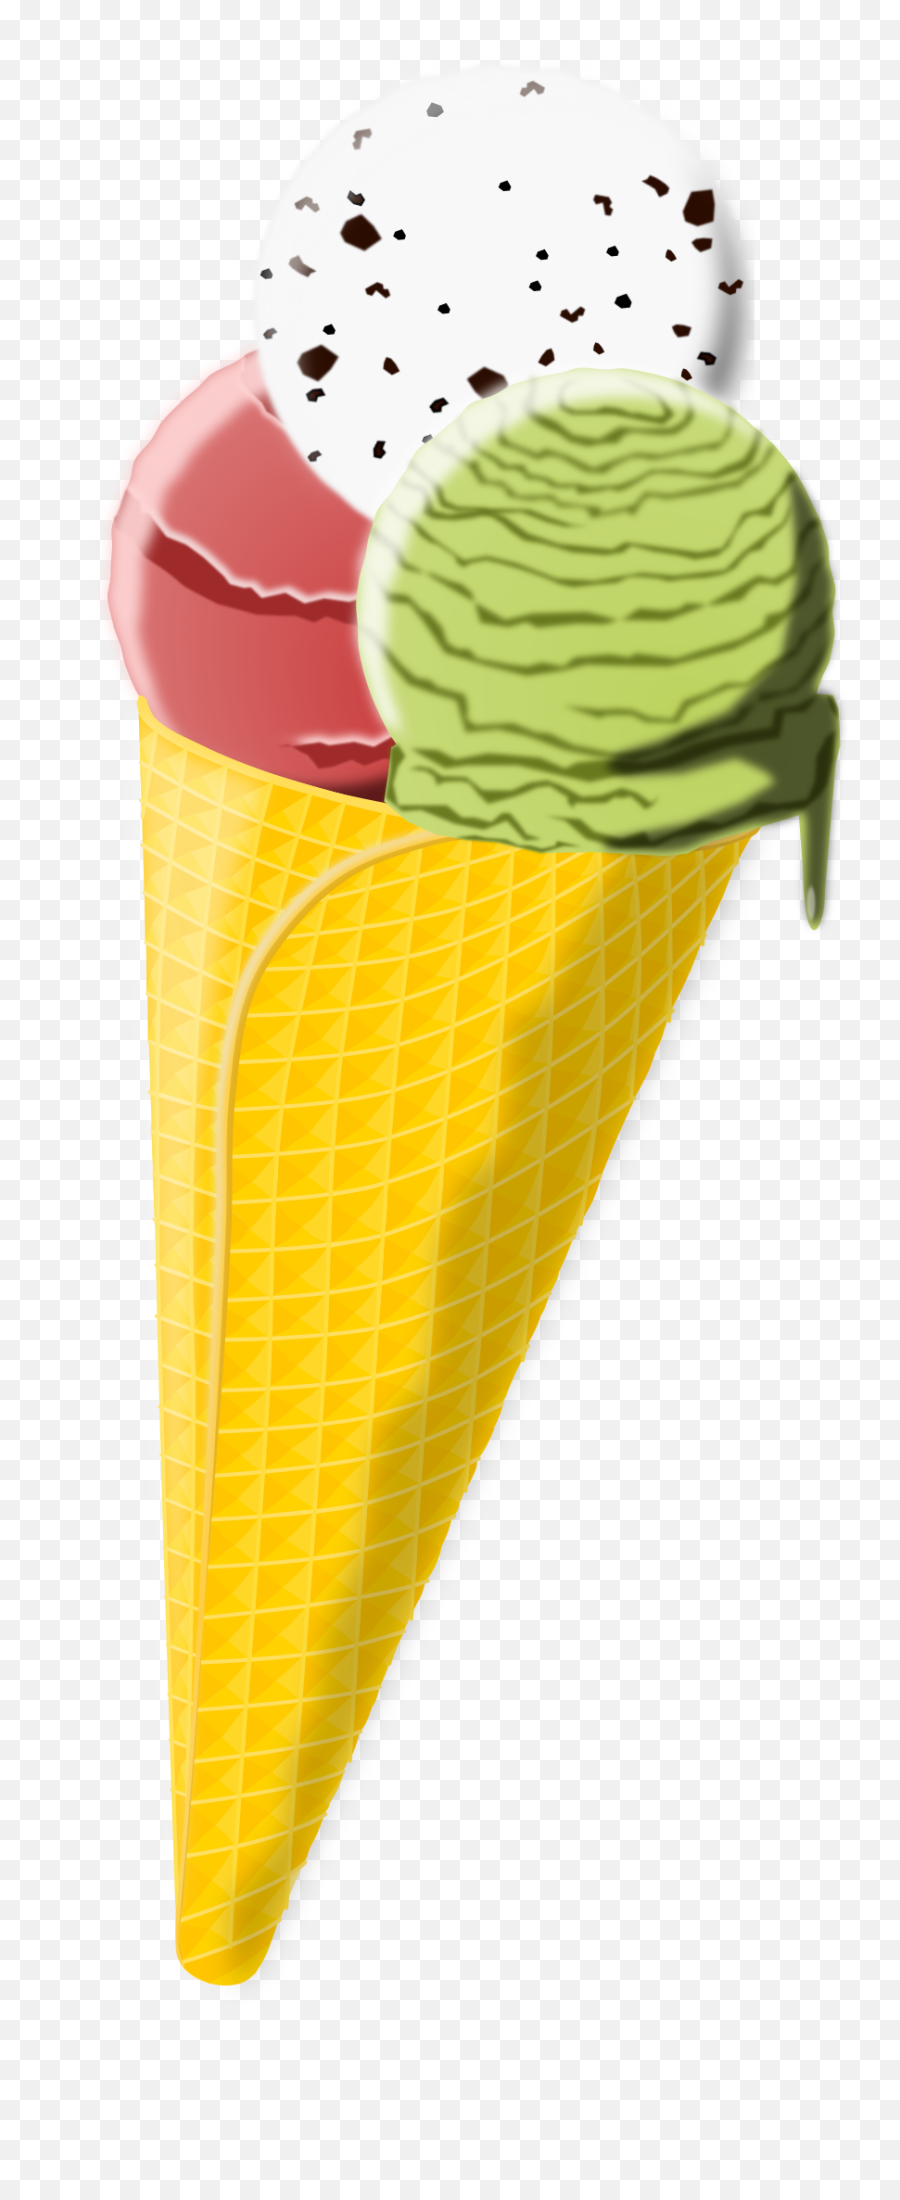 Ice Cream Cone Clipart Png - Cone Clipart Cornet Eis Cone Emoji,Ice Cream Cone Clipart